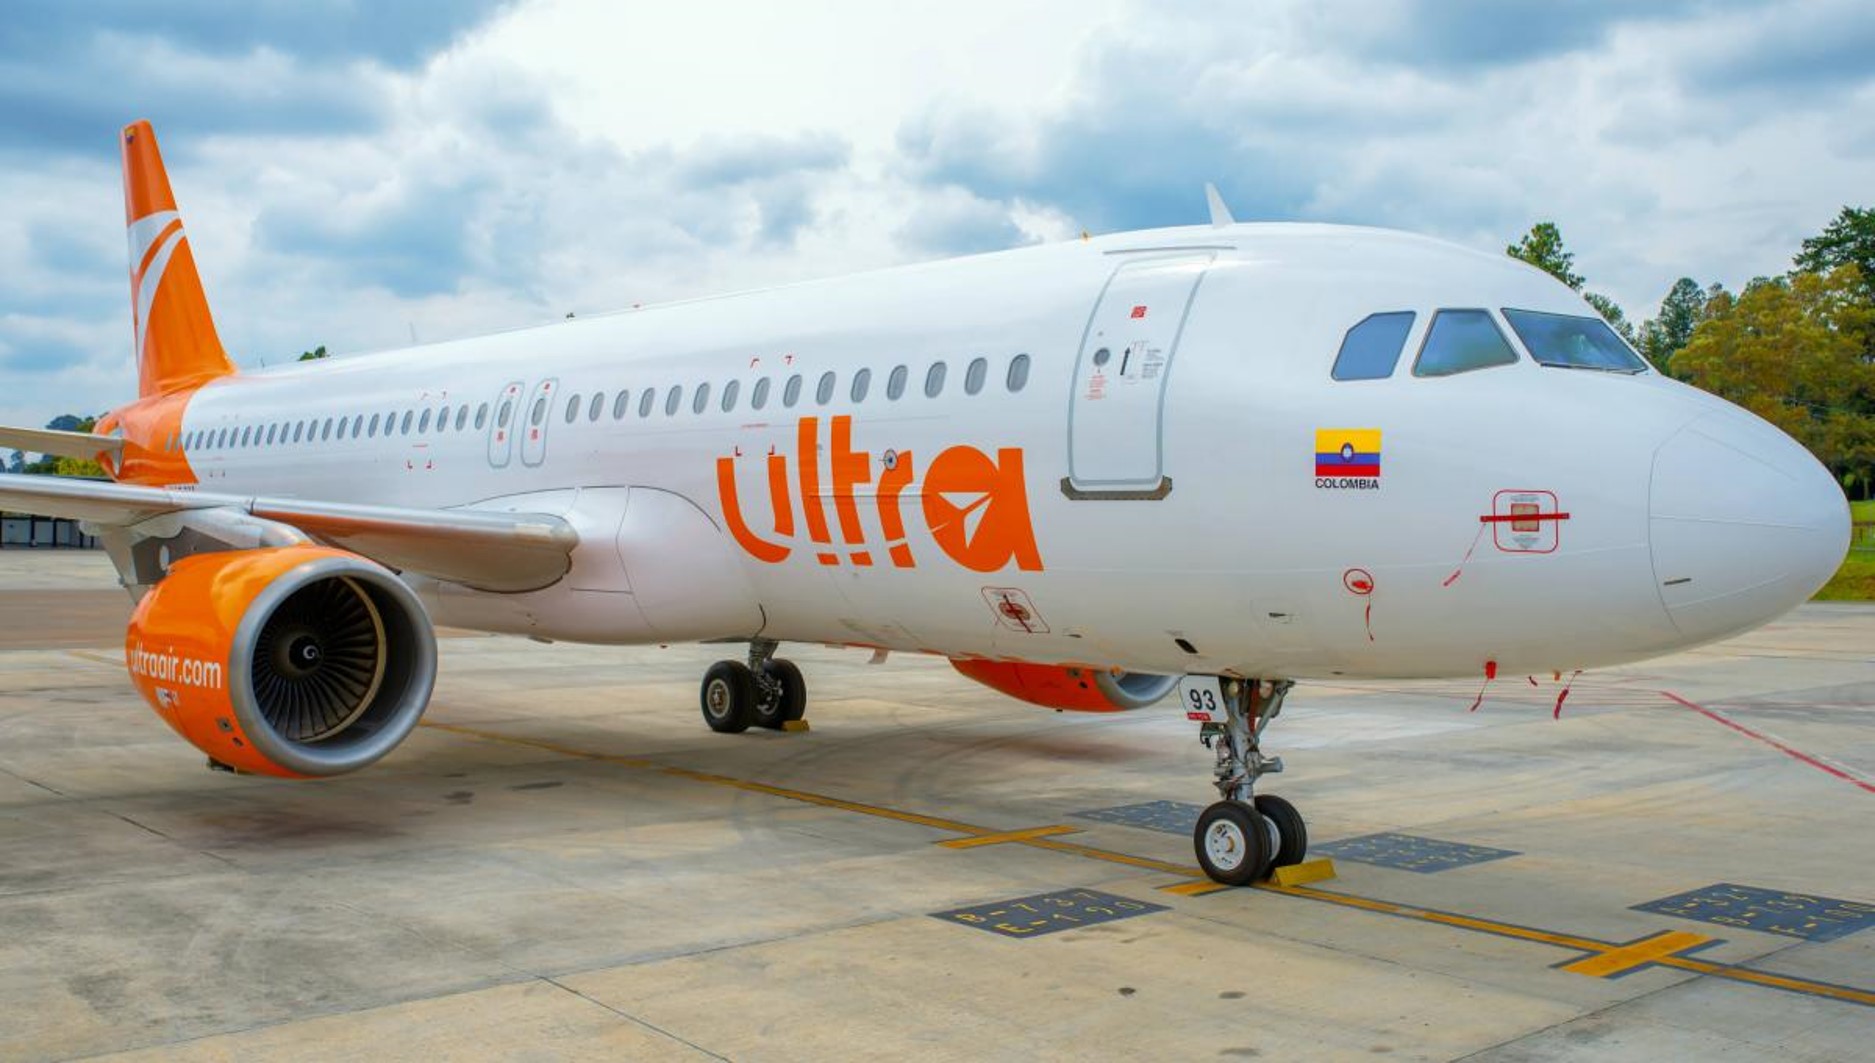 Ultra Air quebró en Colombia y confirma que suspenderá operaciones, por crisis financiera.